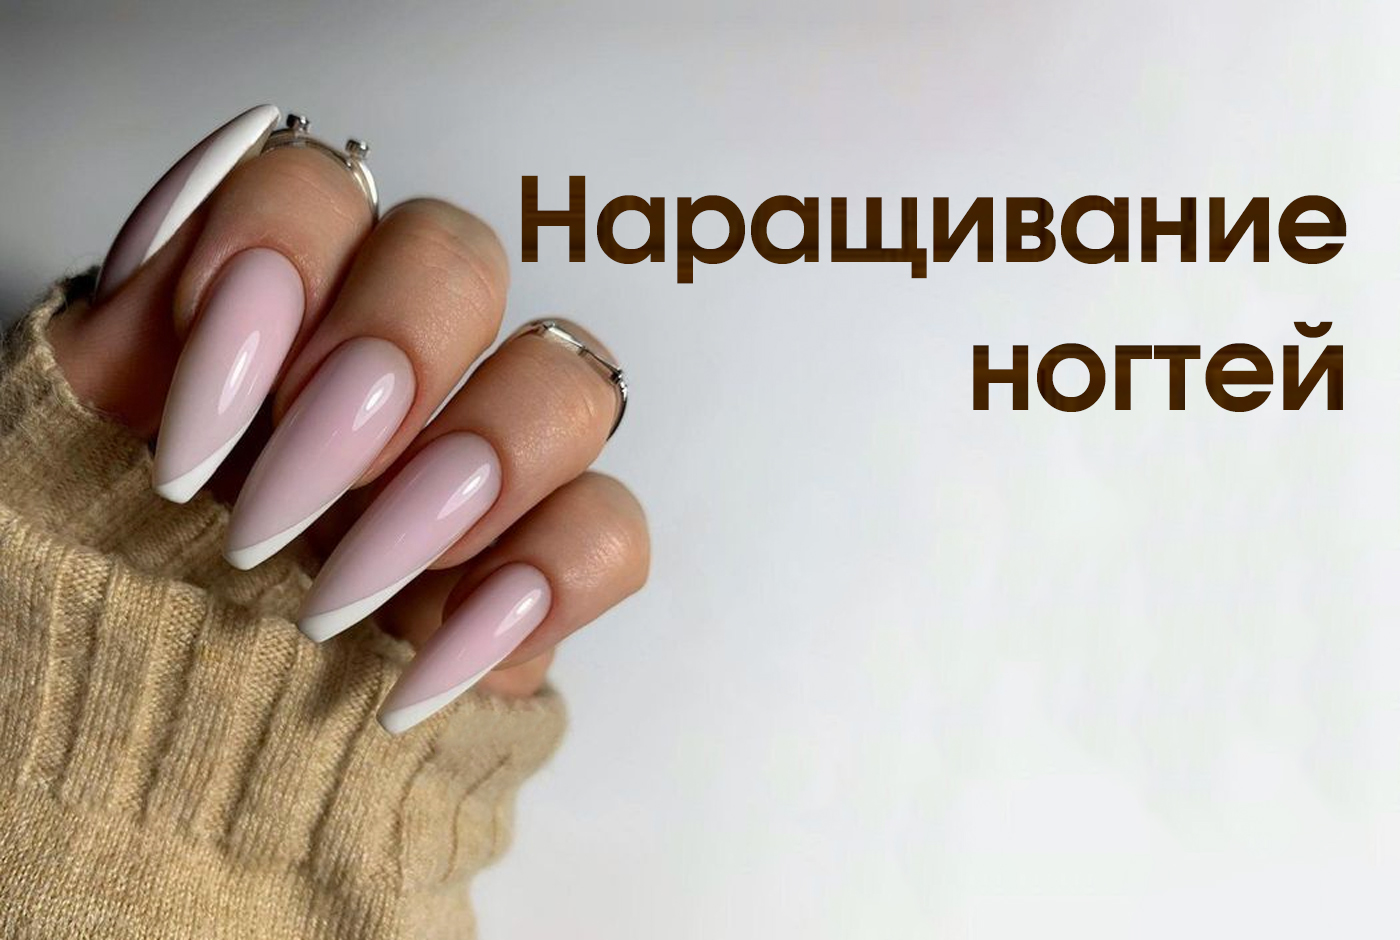 Наращивание ногтей Минск по доступной цене